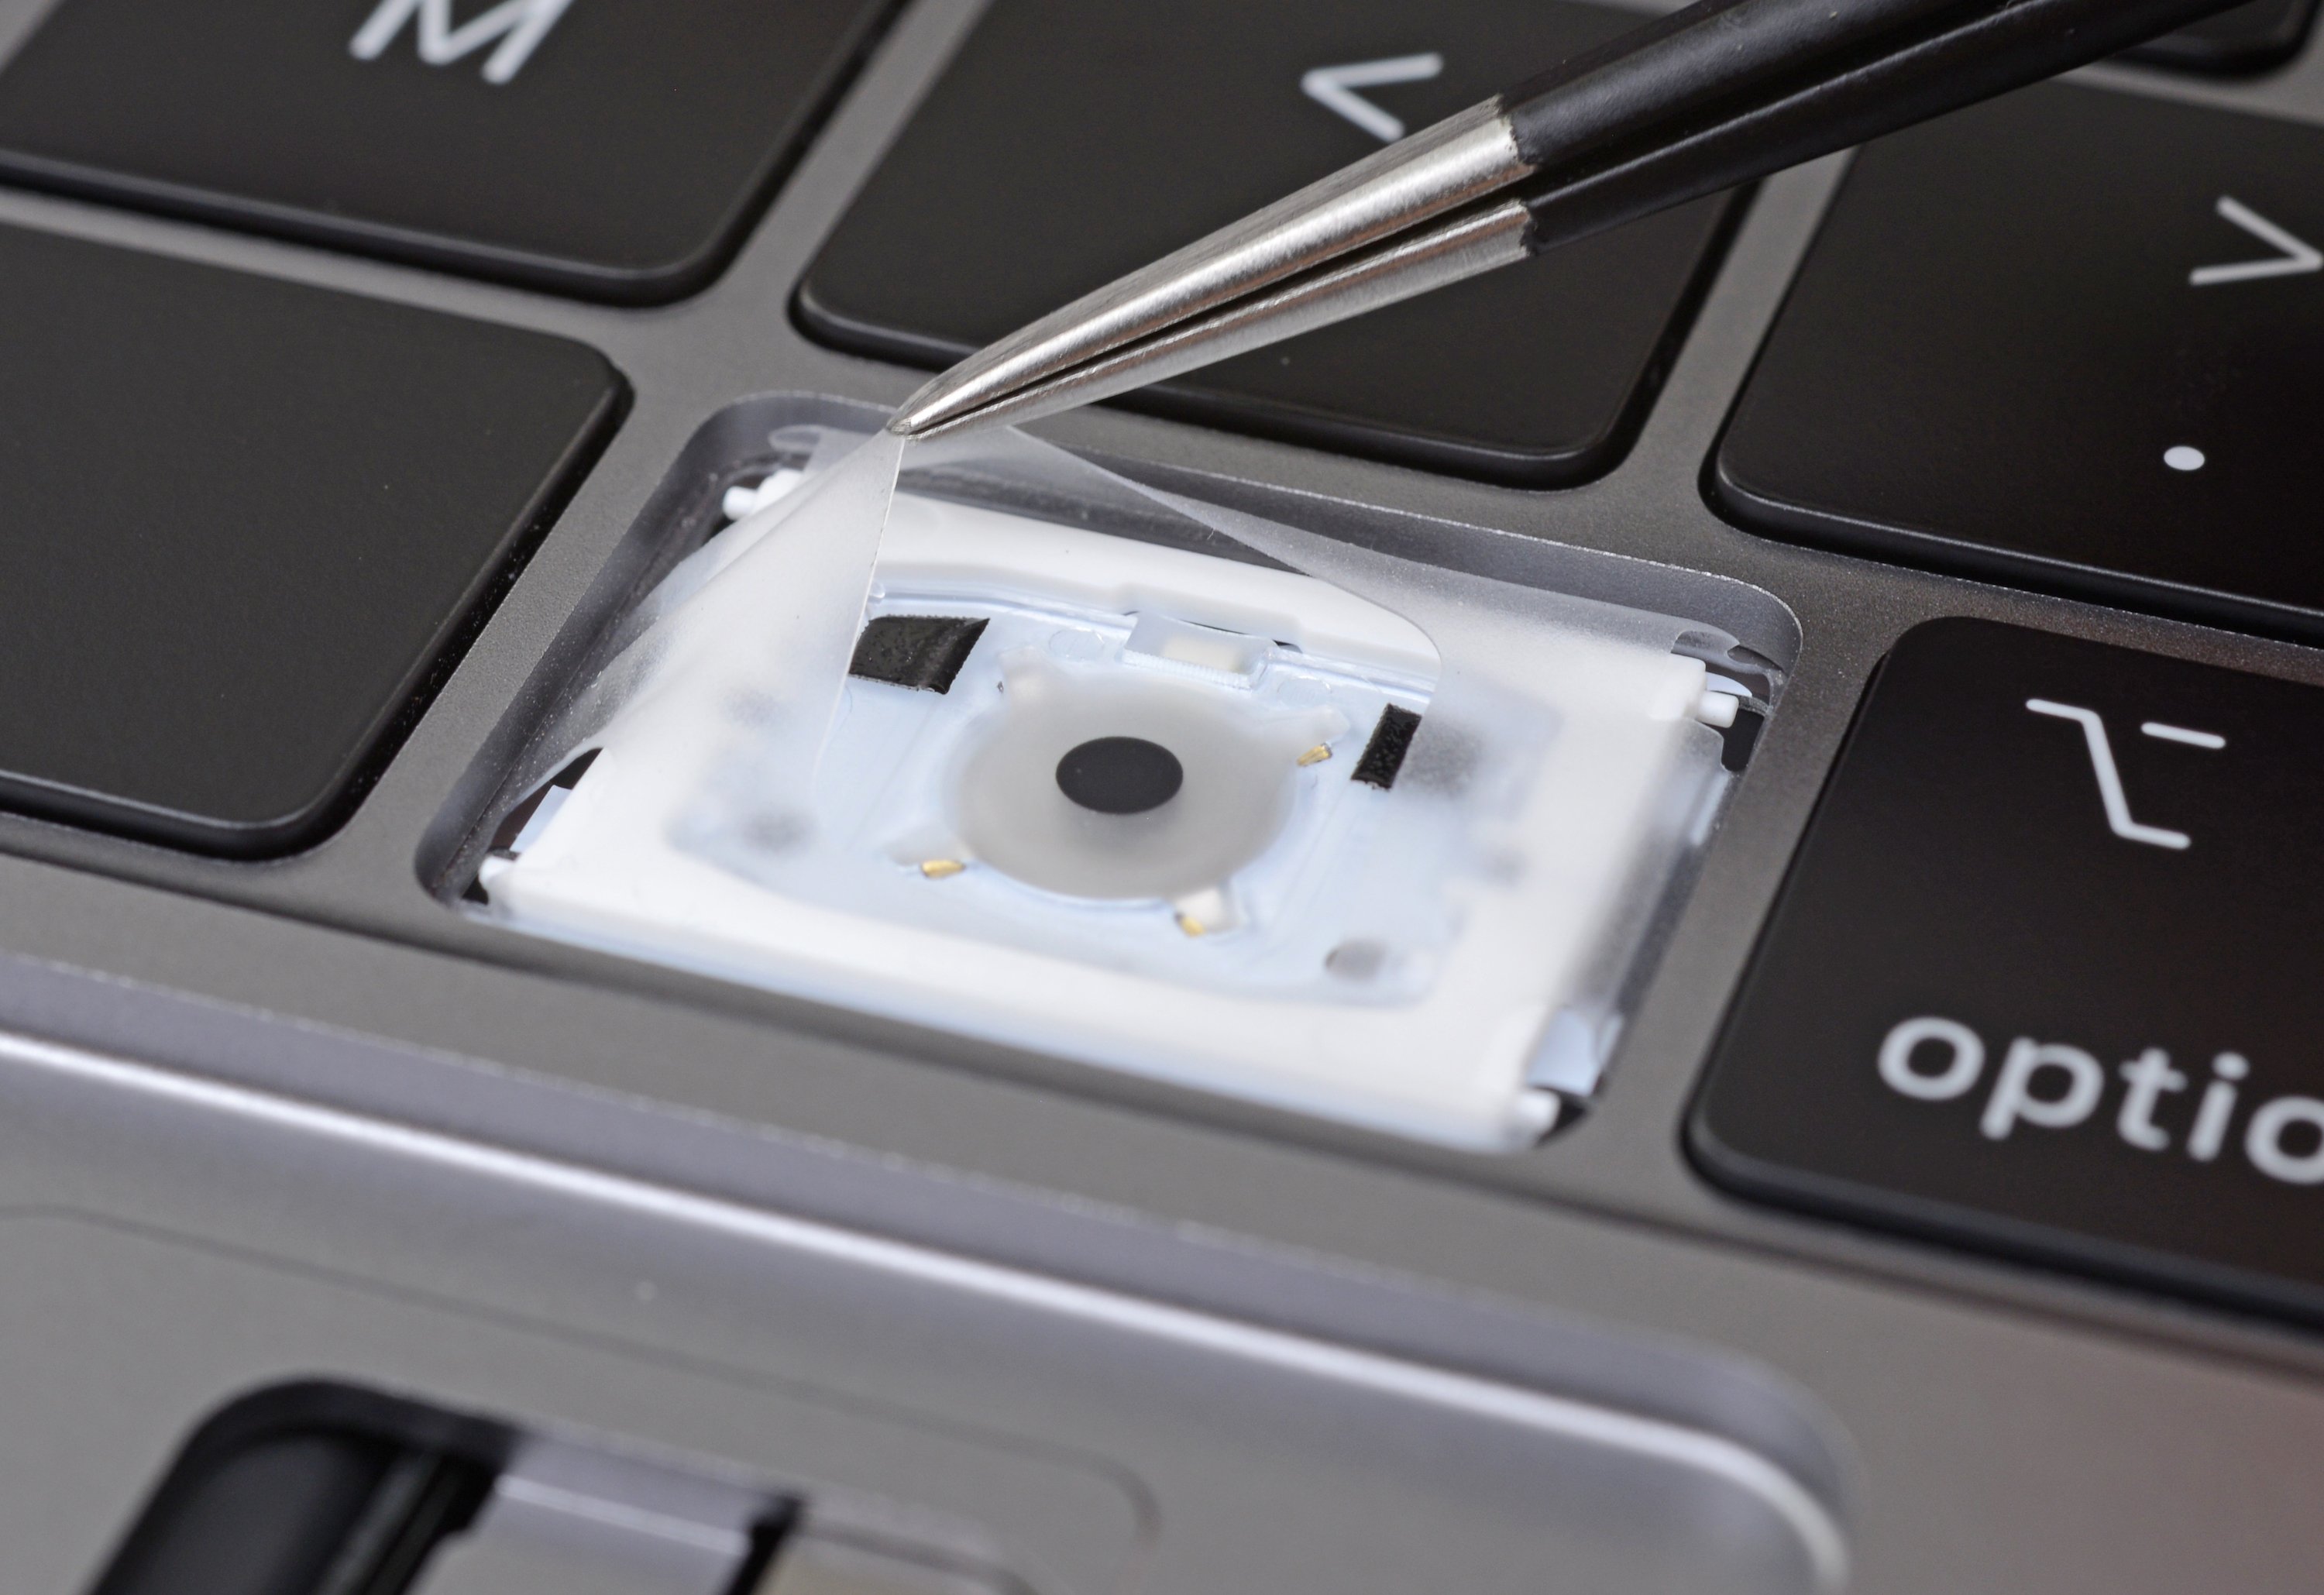 Une impensable faille de sécurité utilisant le clavier du MacBook Pro